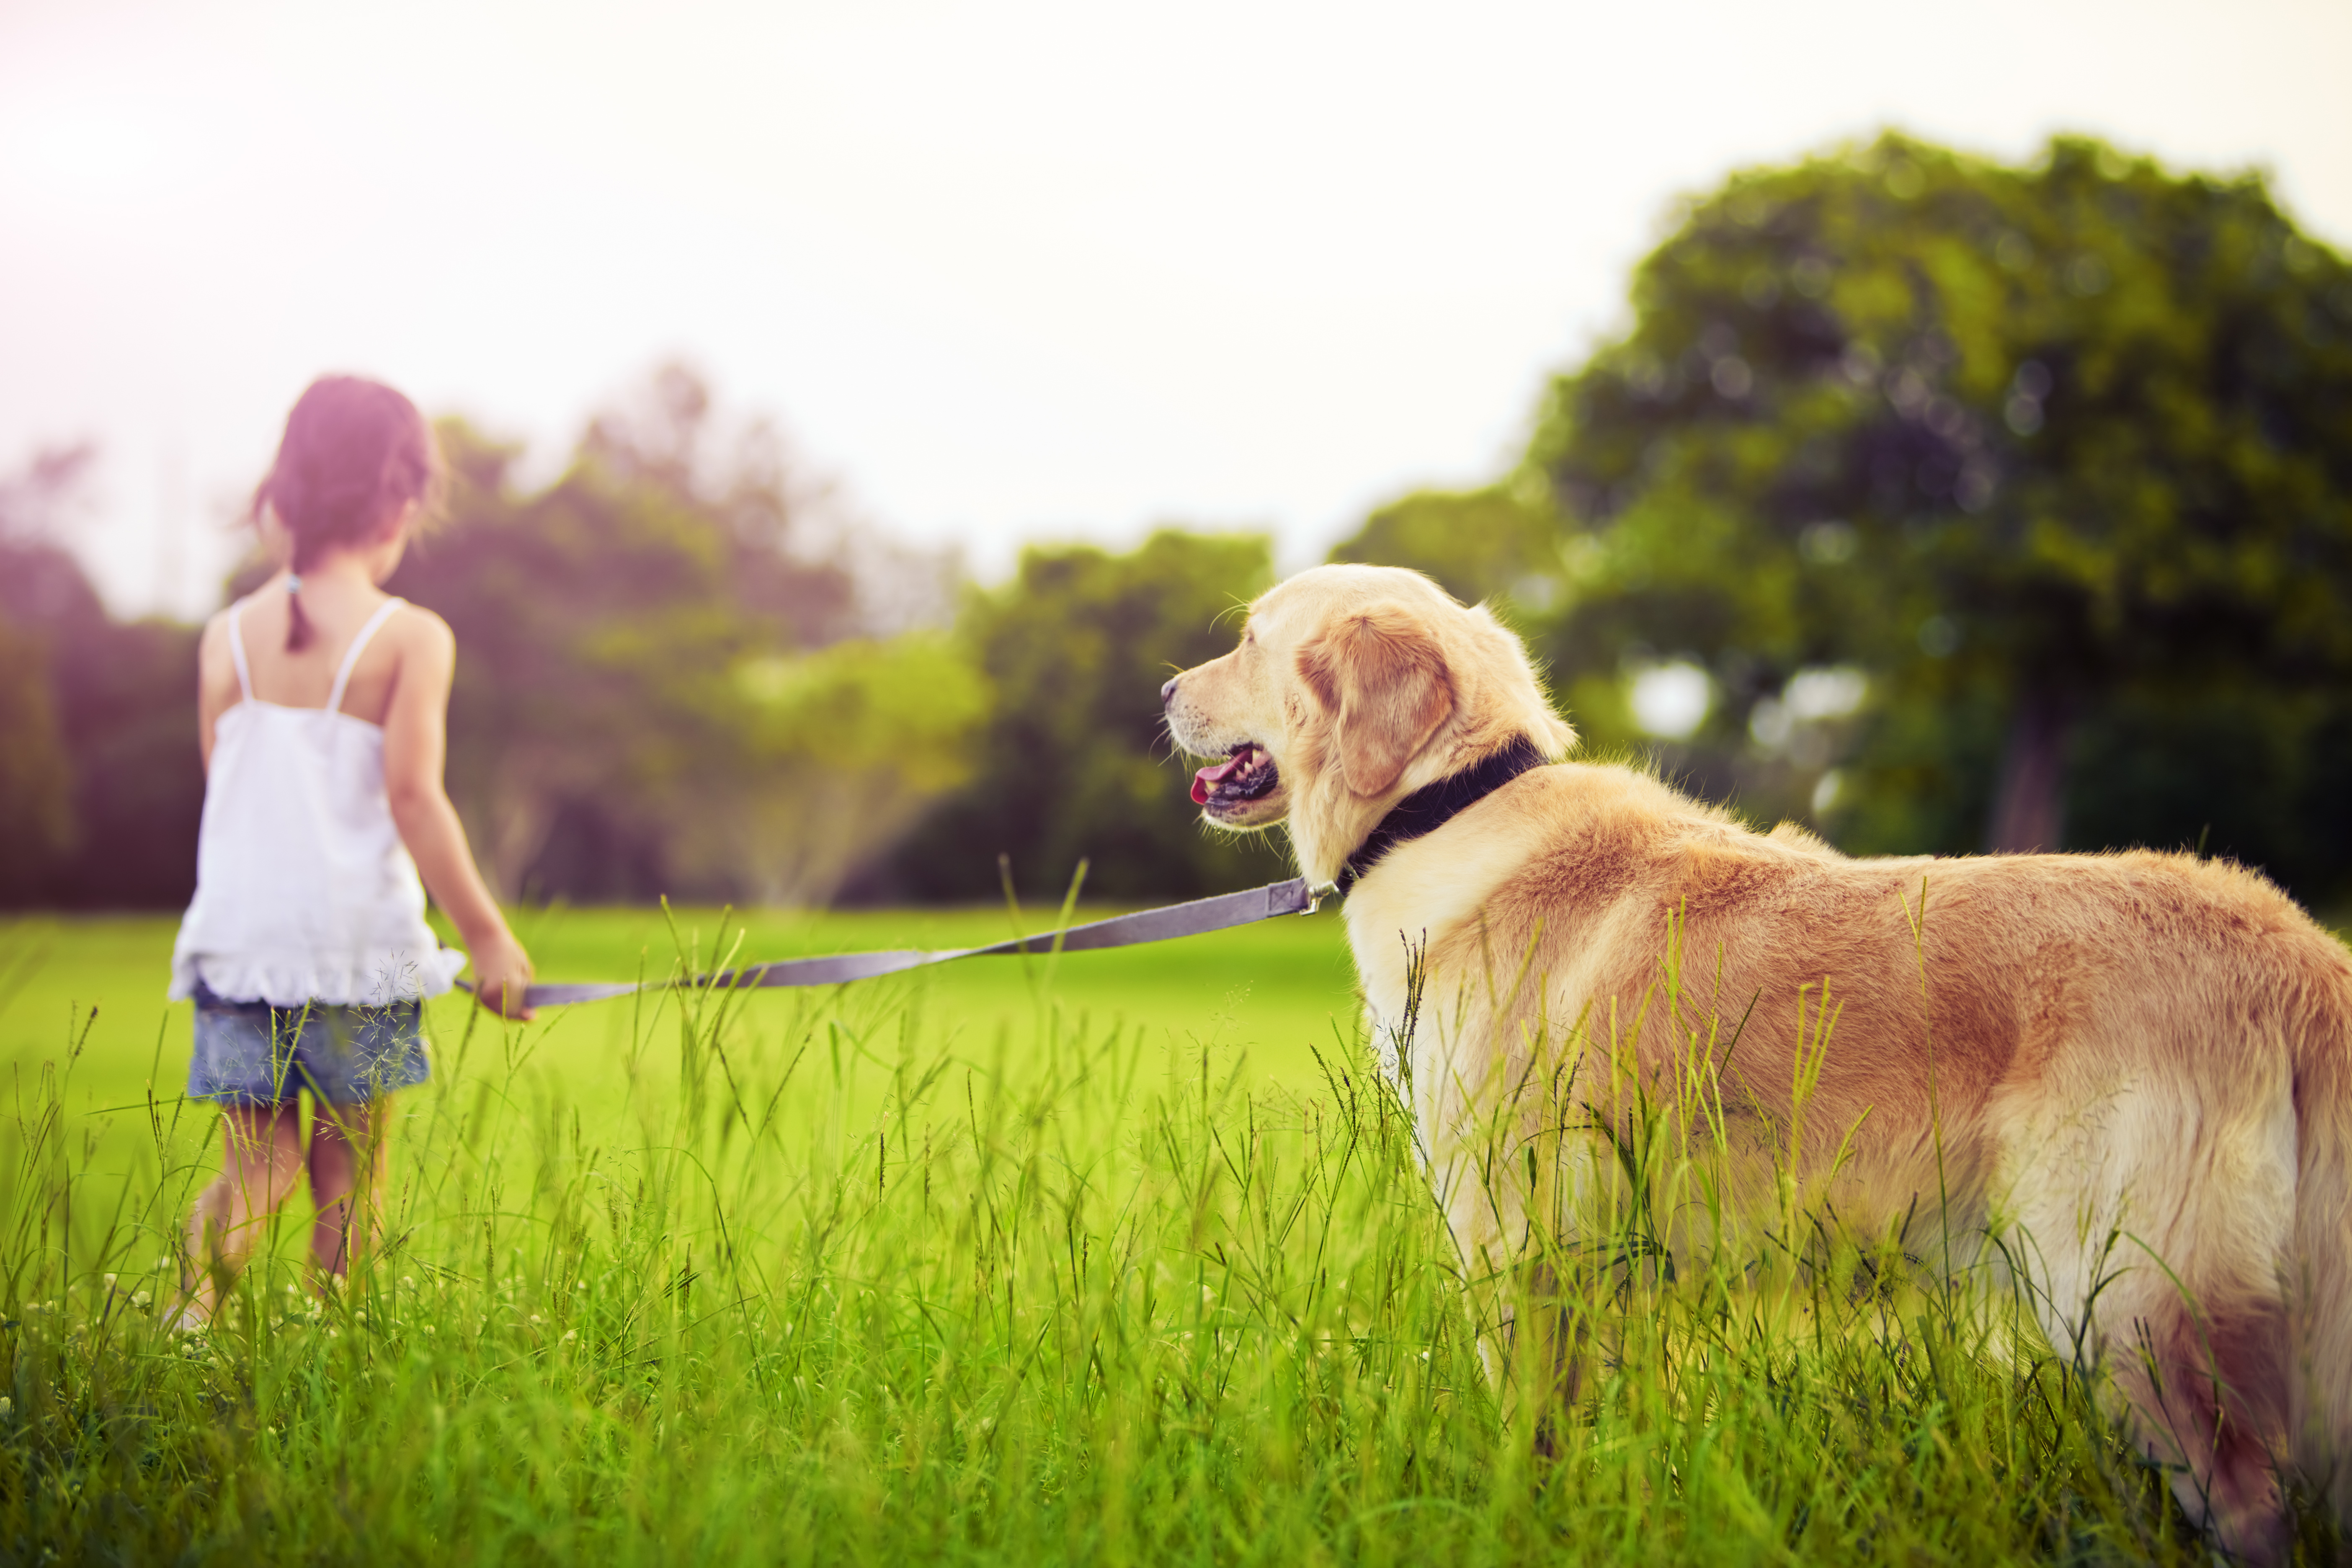 Give a talk about pets. Лабрадор ретривер золотистый. Прогулка с собакой. Человек с собакой на природе. Девочка гуляет с собакой.